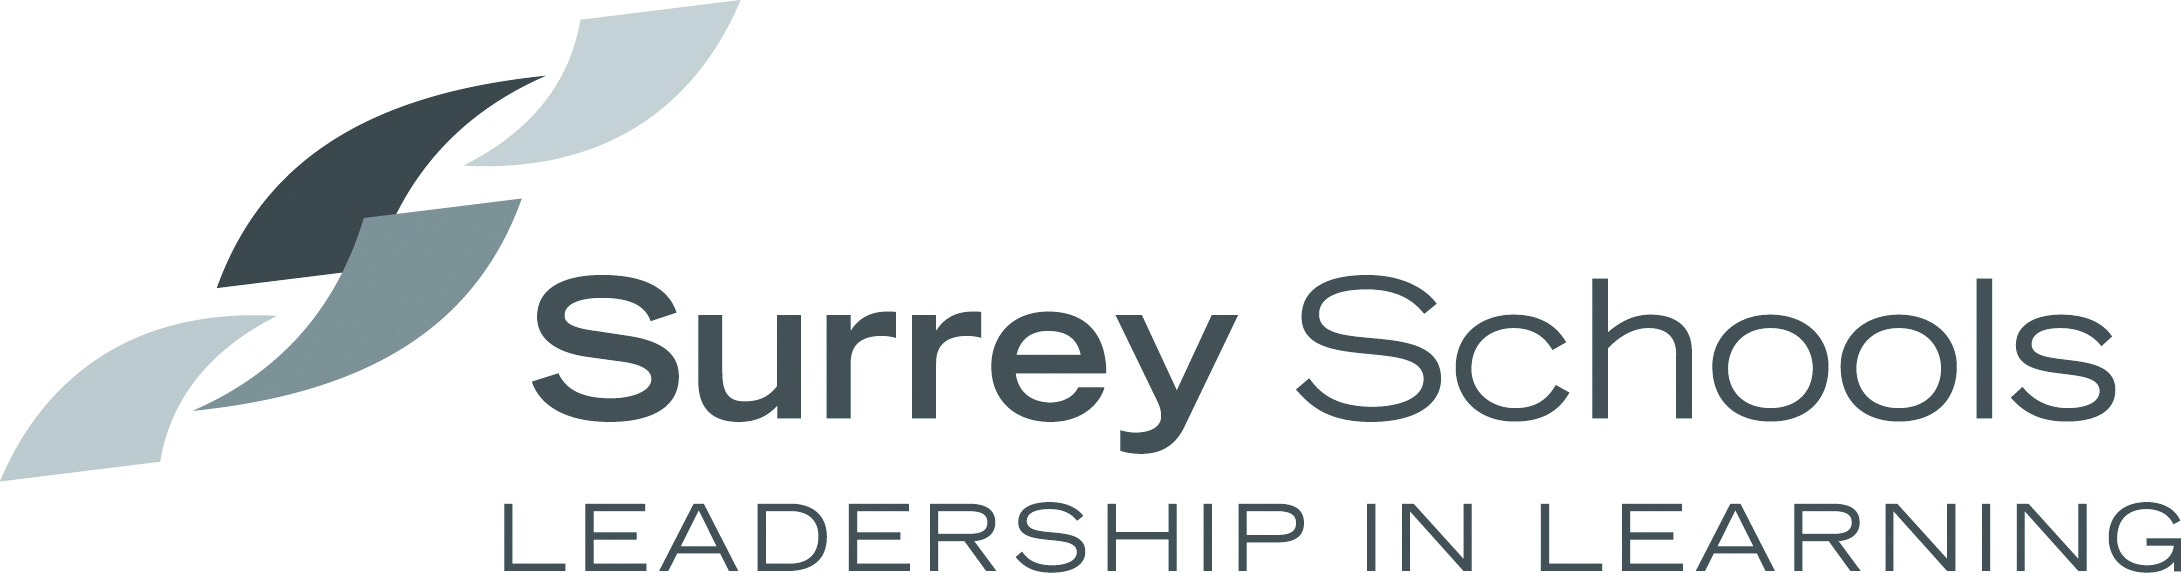 surrey-schools-logo-greyscale.4f6ceb136407.jpg